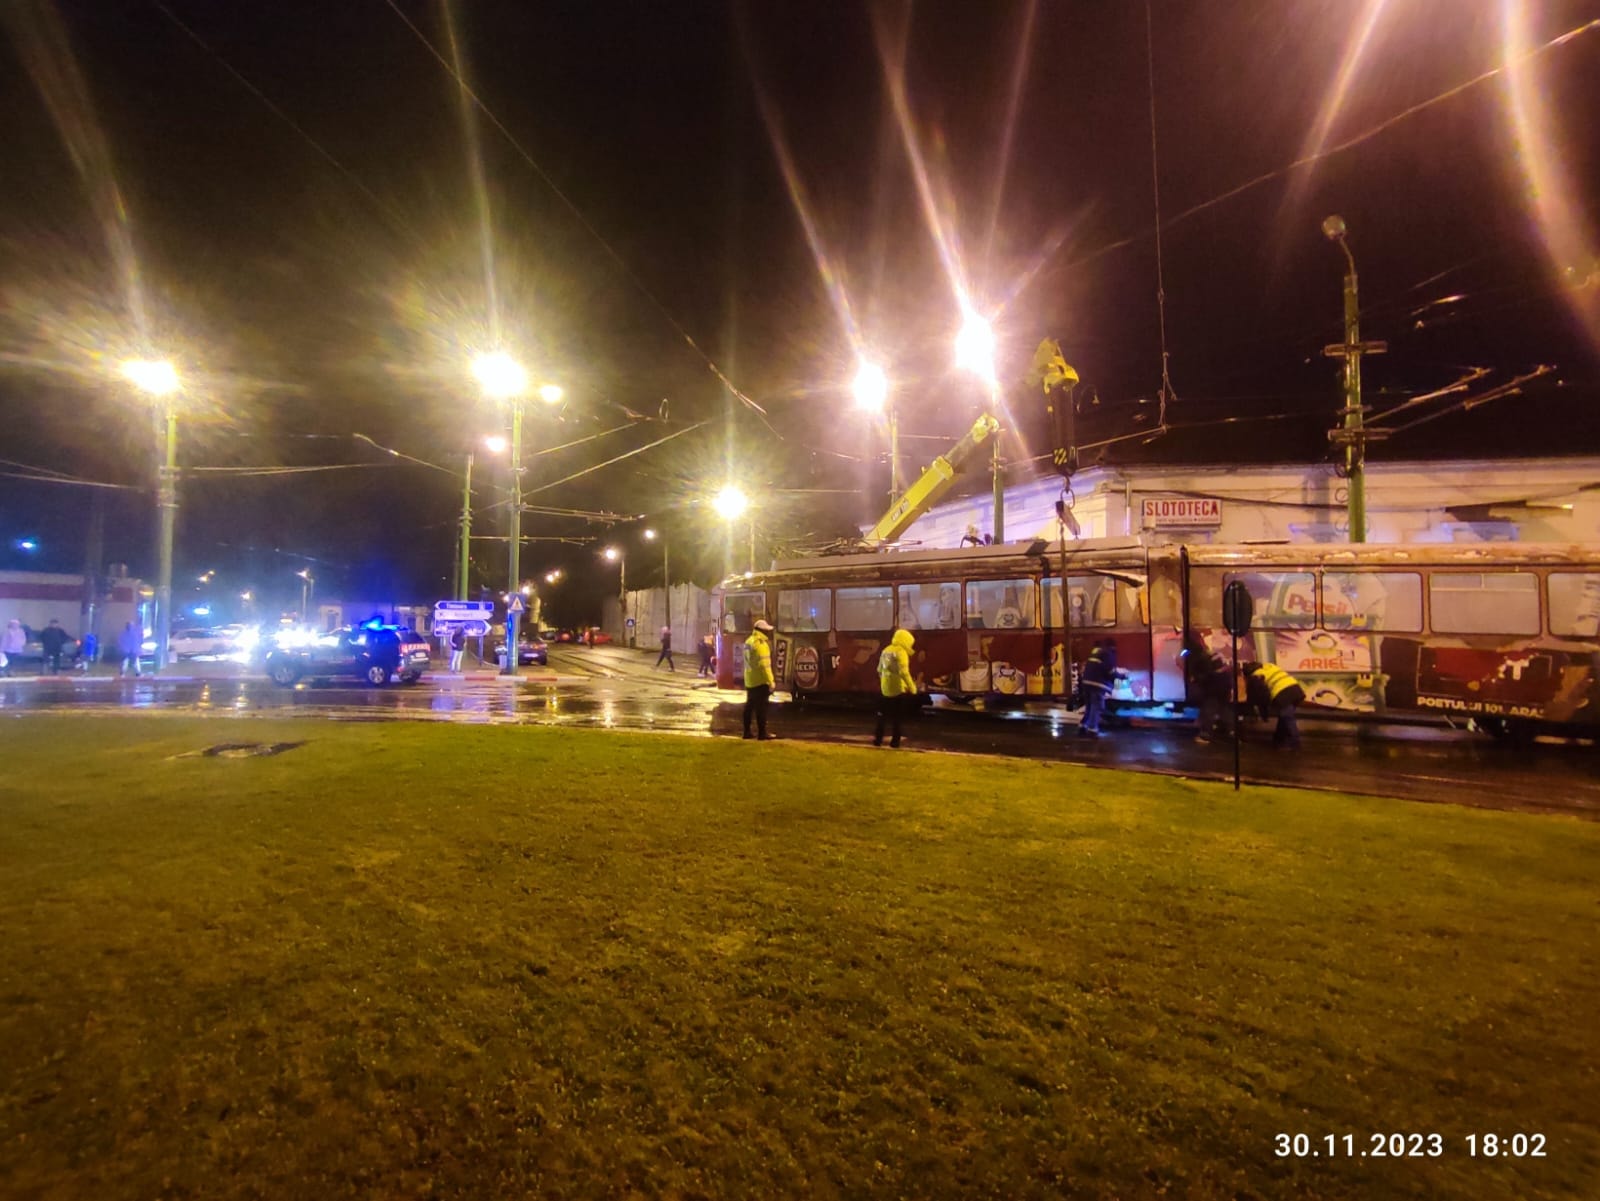 FOTO | Tramvai sărit de pe linii, în Boul Roşu